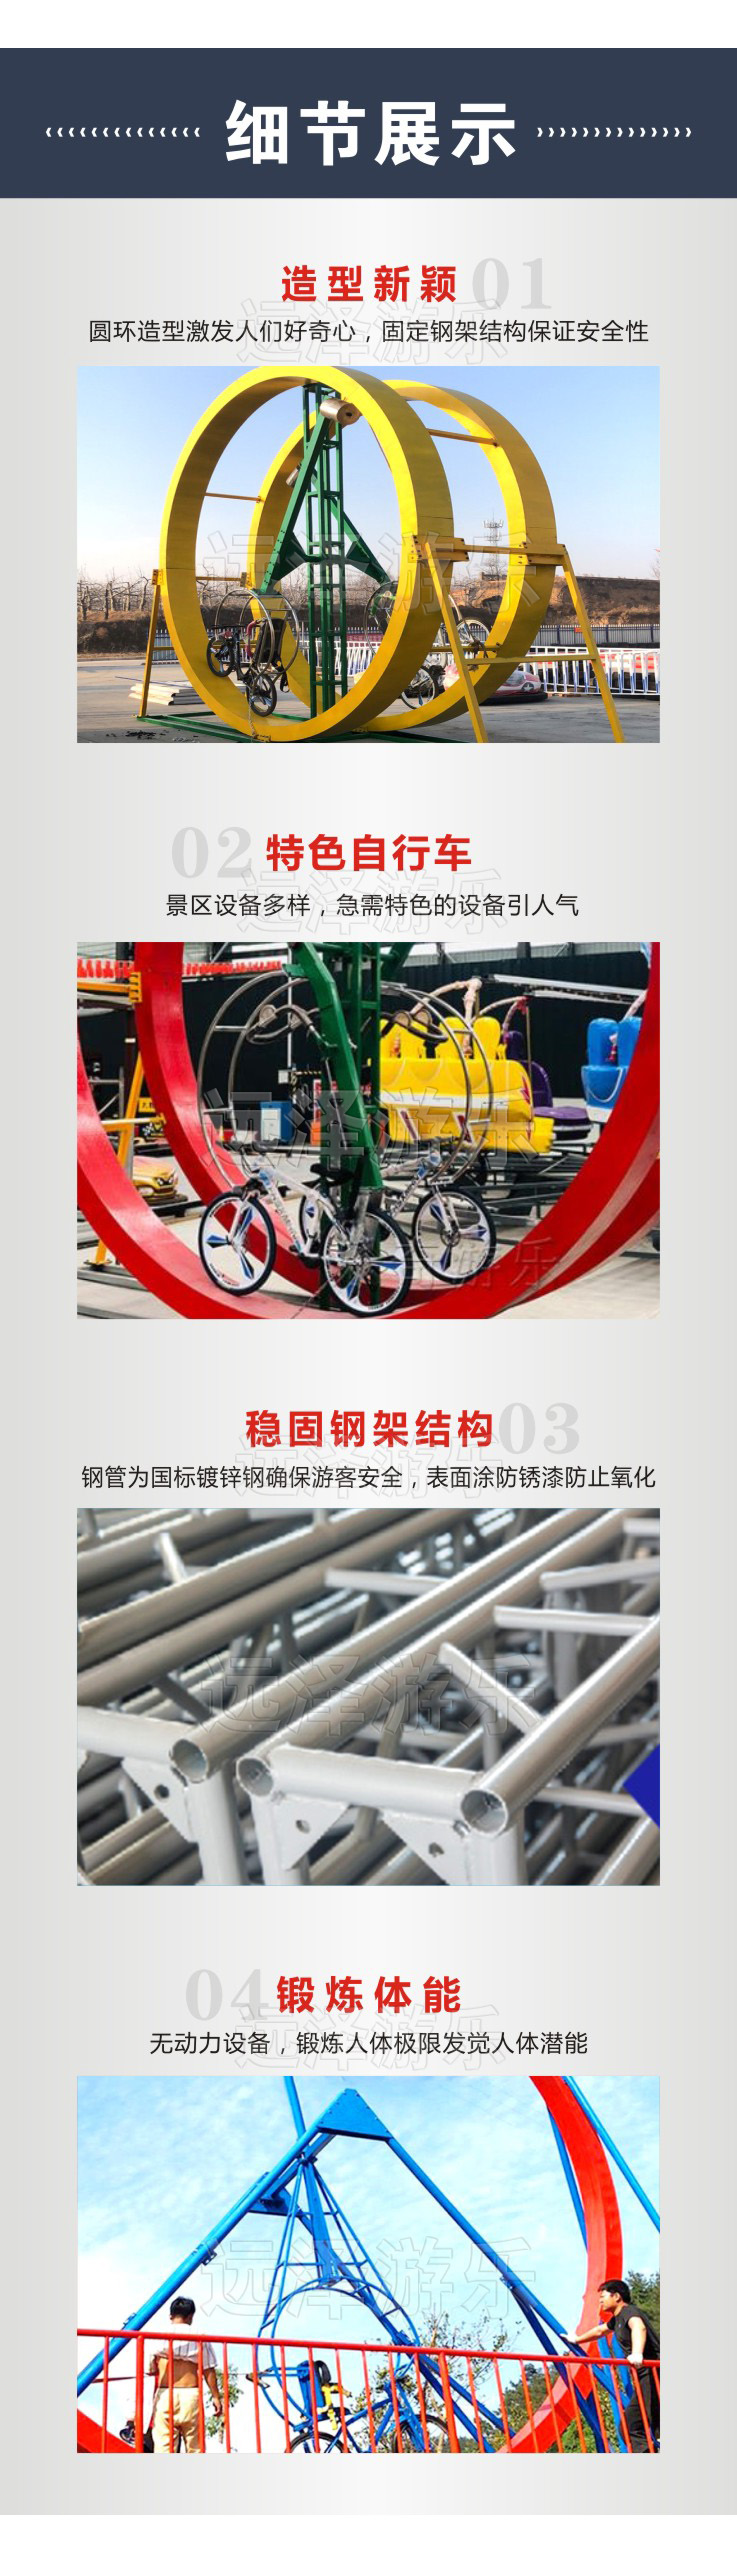 磐石无动力游乐设施 网红自行车运行原理 360度自行车 圆环自行车 4